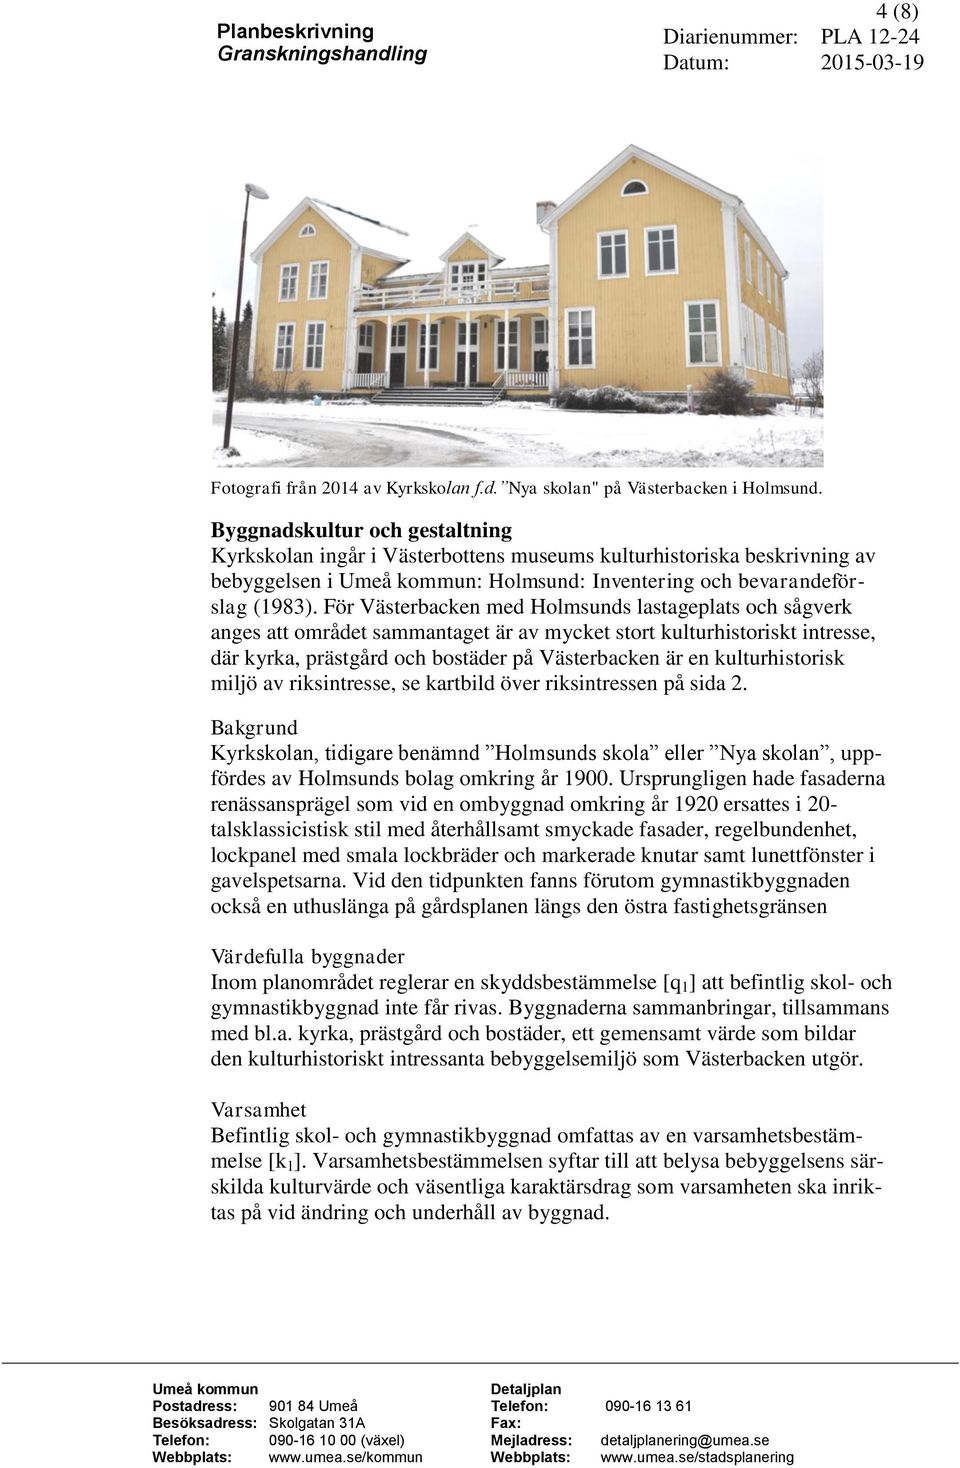 För Västerbacken med Holmsunds lastageplats och sågverk anges att området sammantaget är av mycket stort kulturhistoriskt intresse, där kyrka, prästgård och bostäder på Västerbacken är en